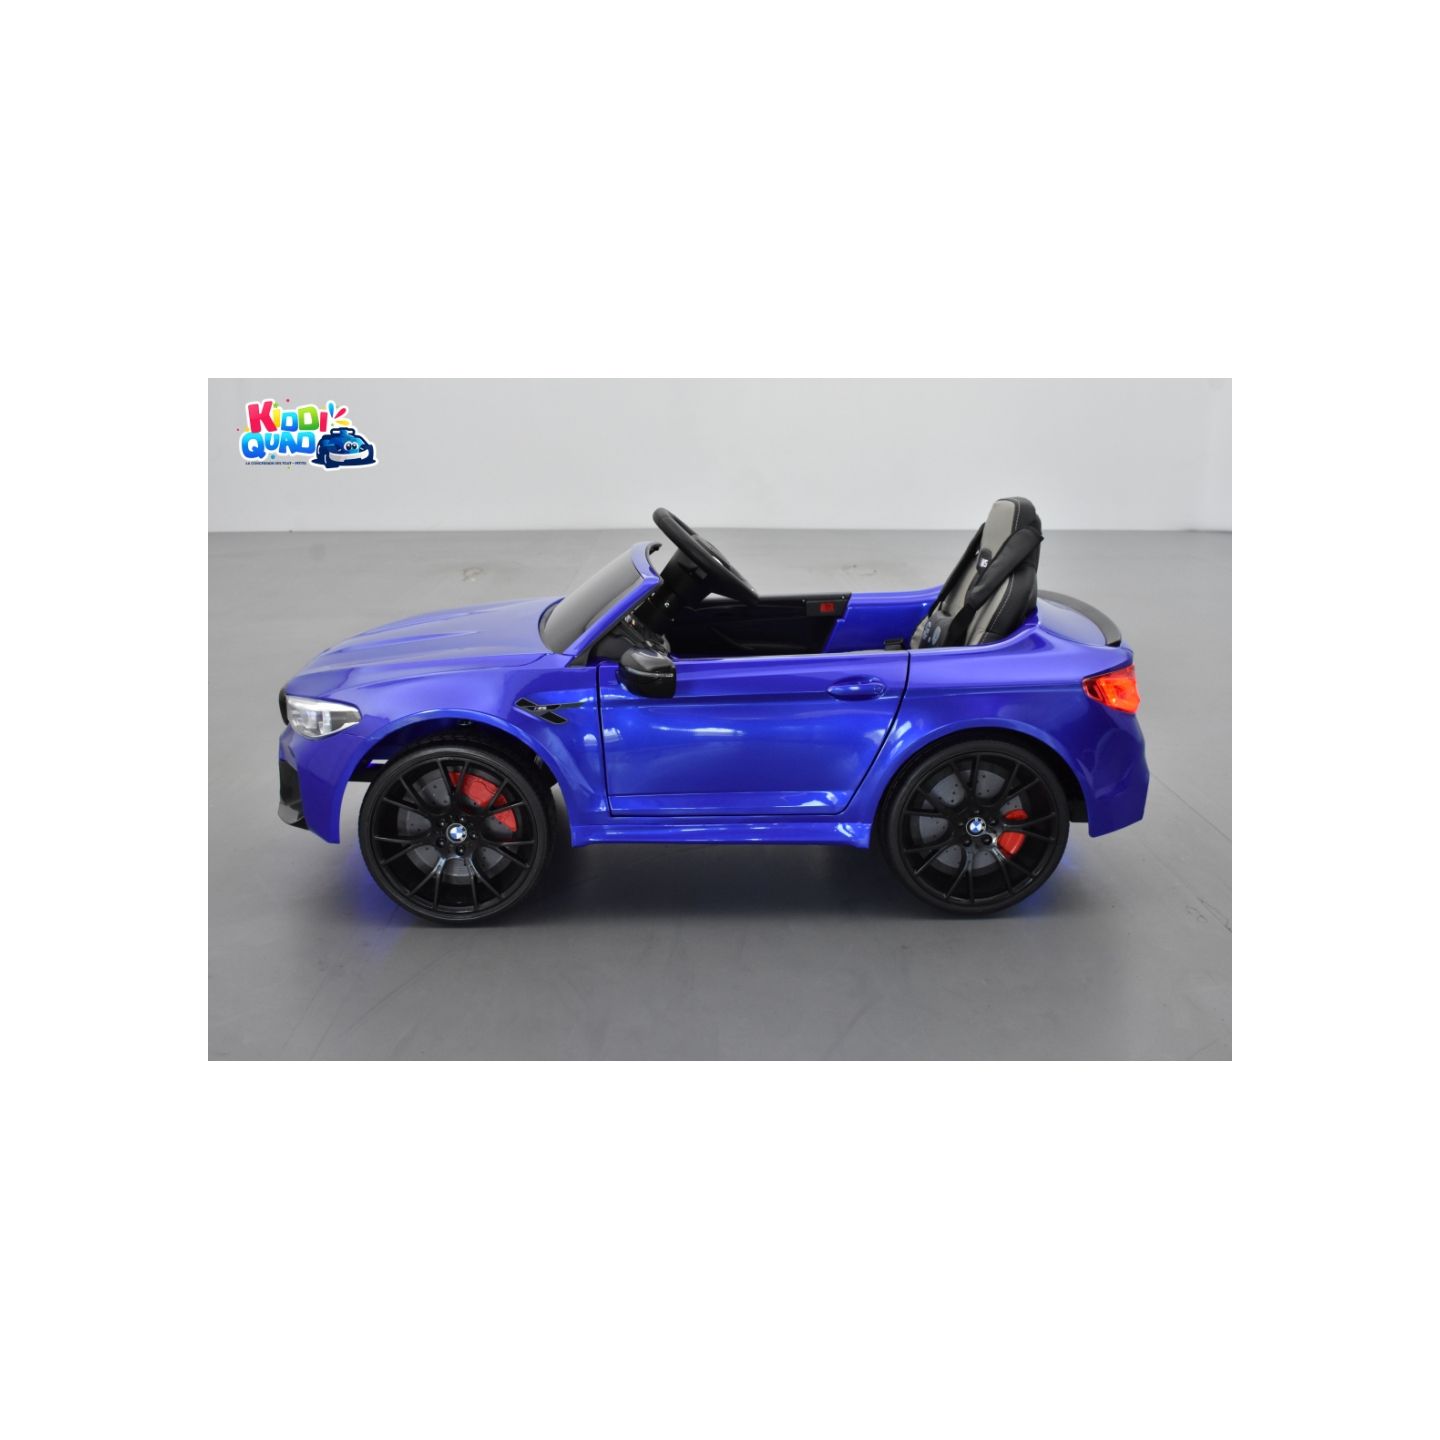 BMW M5 24 Volts bleu Edition Drift, voiture électrique enfant 24 Volts 1 place, 2 moteurs